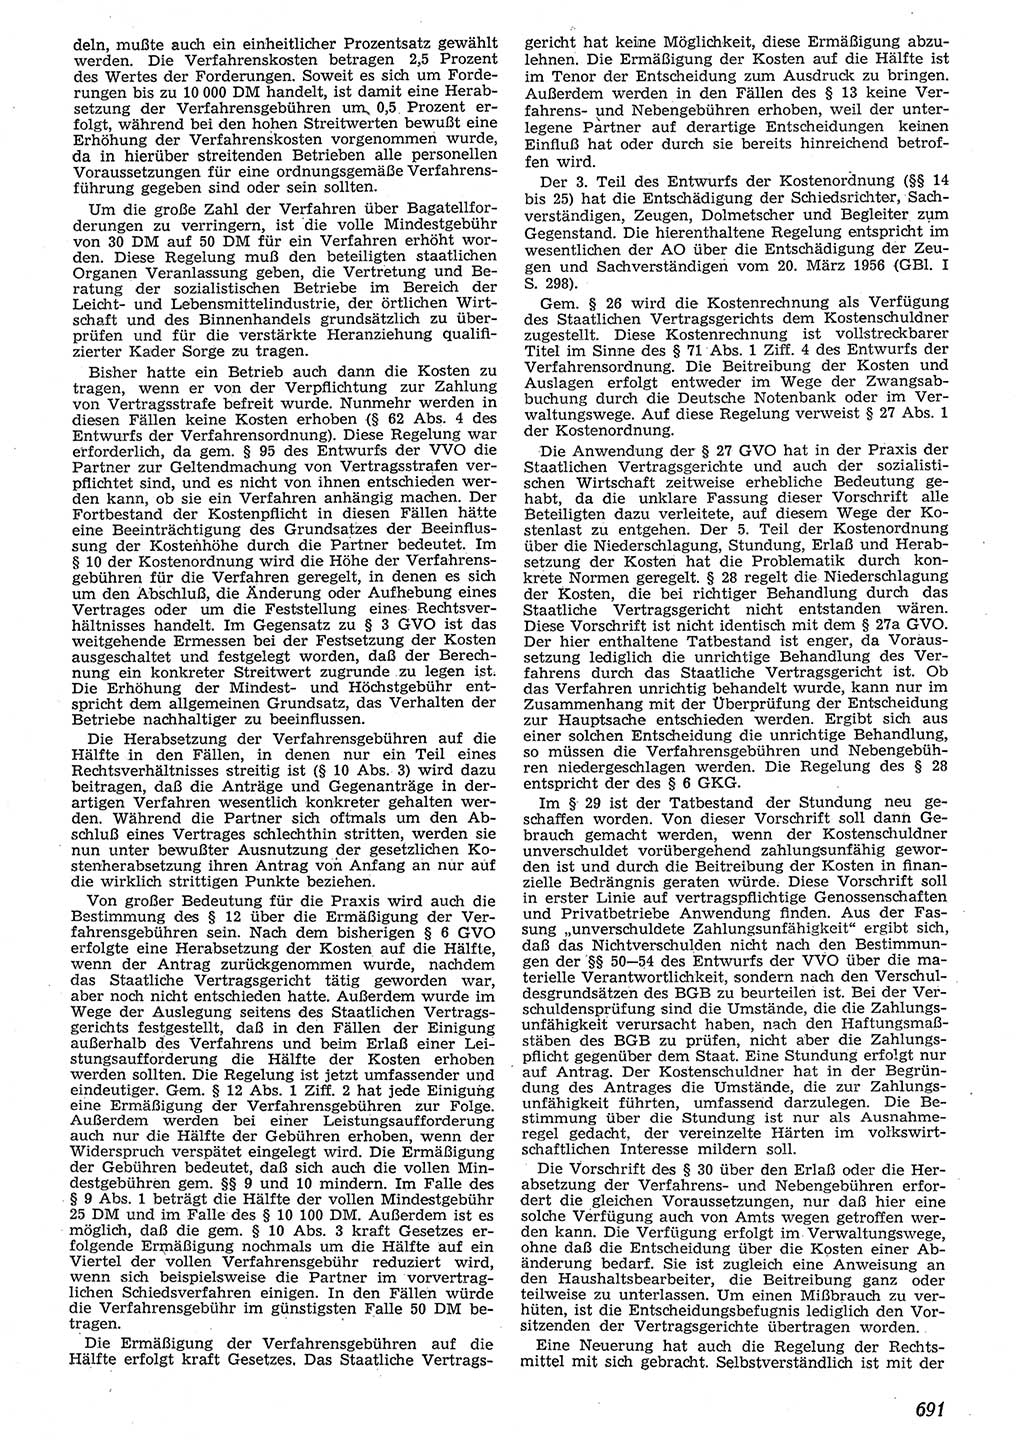 Neue Justiz (NJ), Zeitschrift für Recht und Rechtswissenschaft [Deutsche Demokratische Republik (DDR)], 10. Jahrgang 1956, Seite 691 (NJ DDR 1956, S. 691)